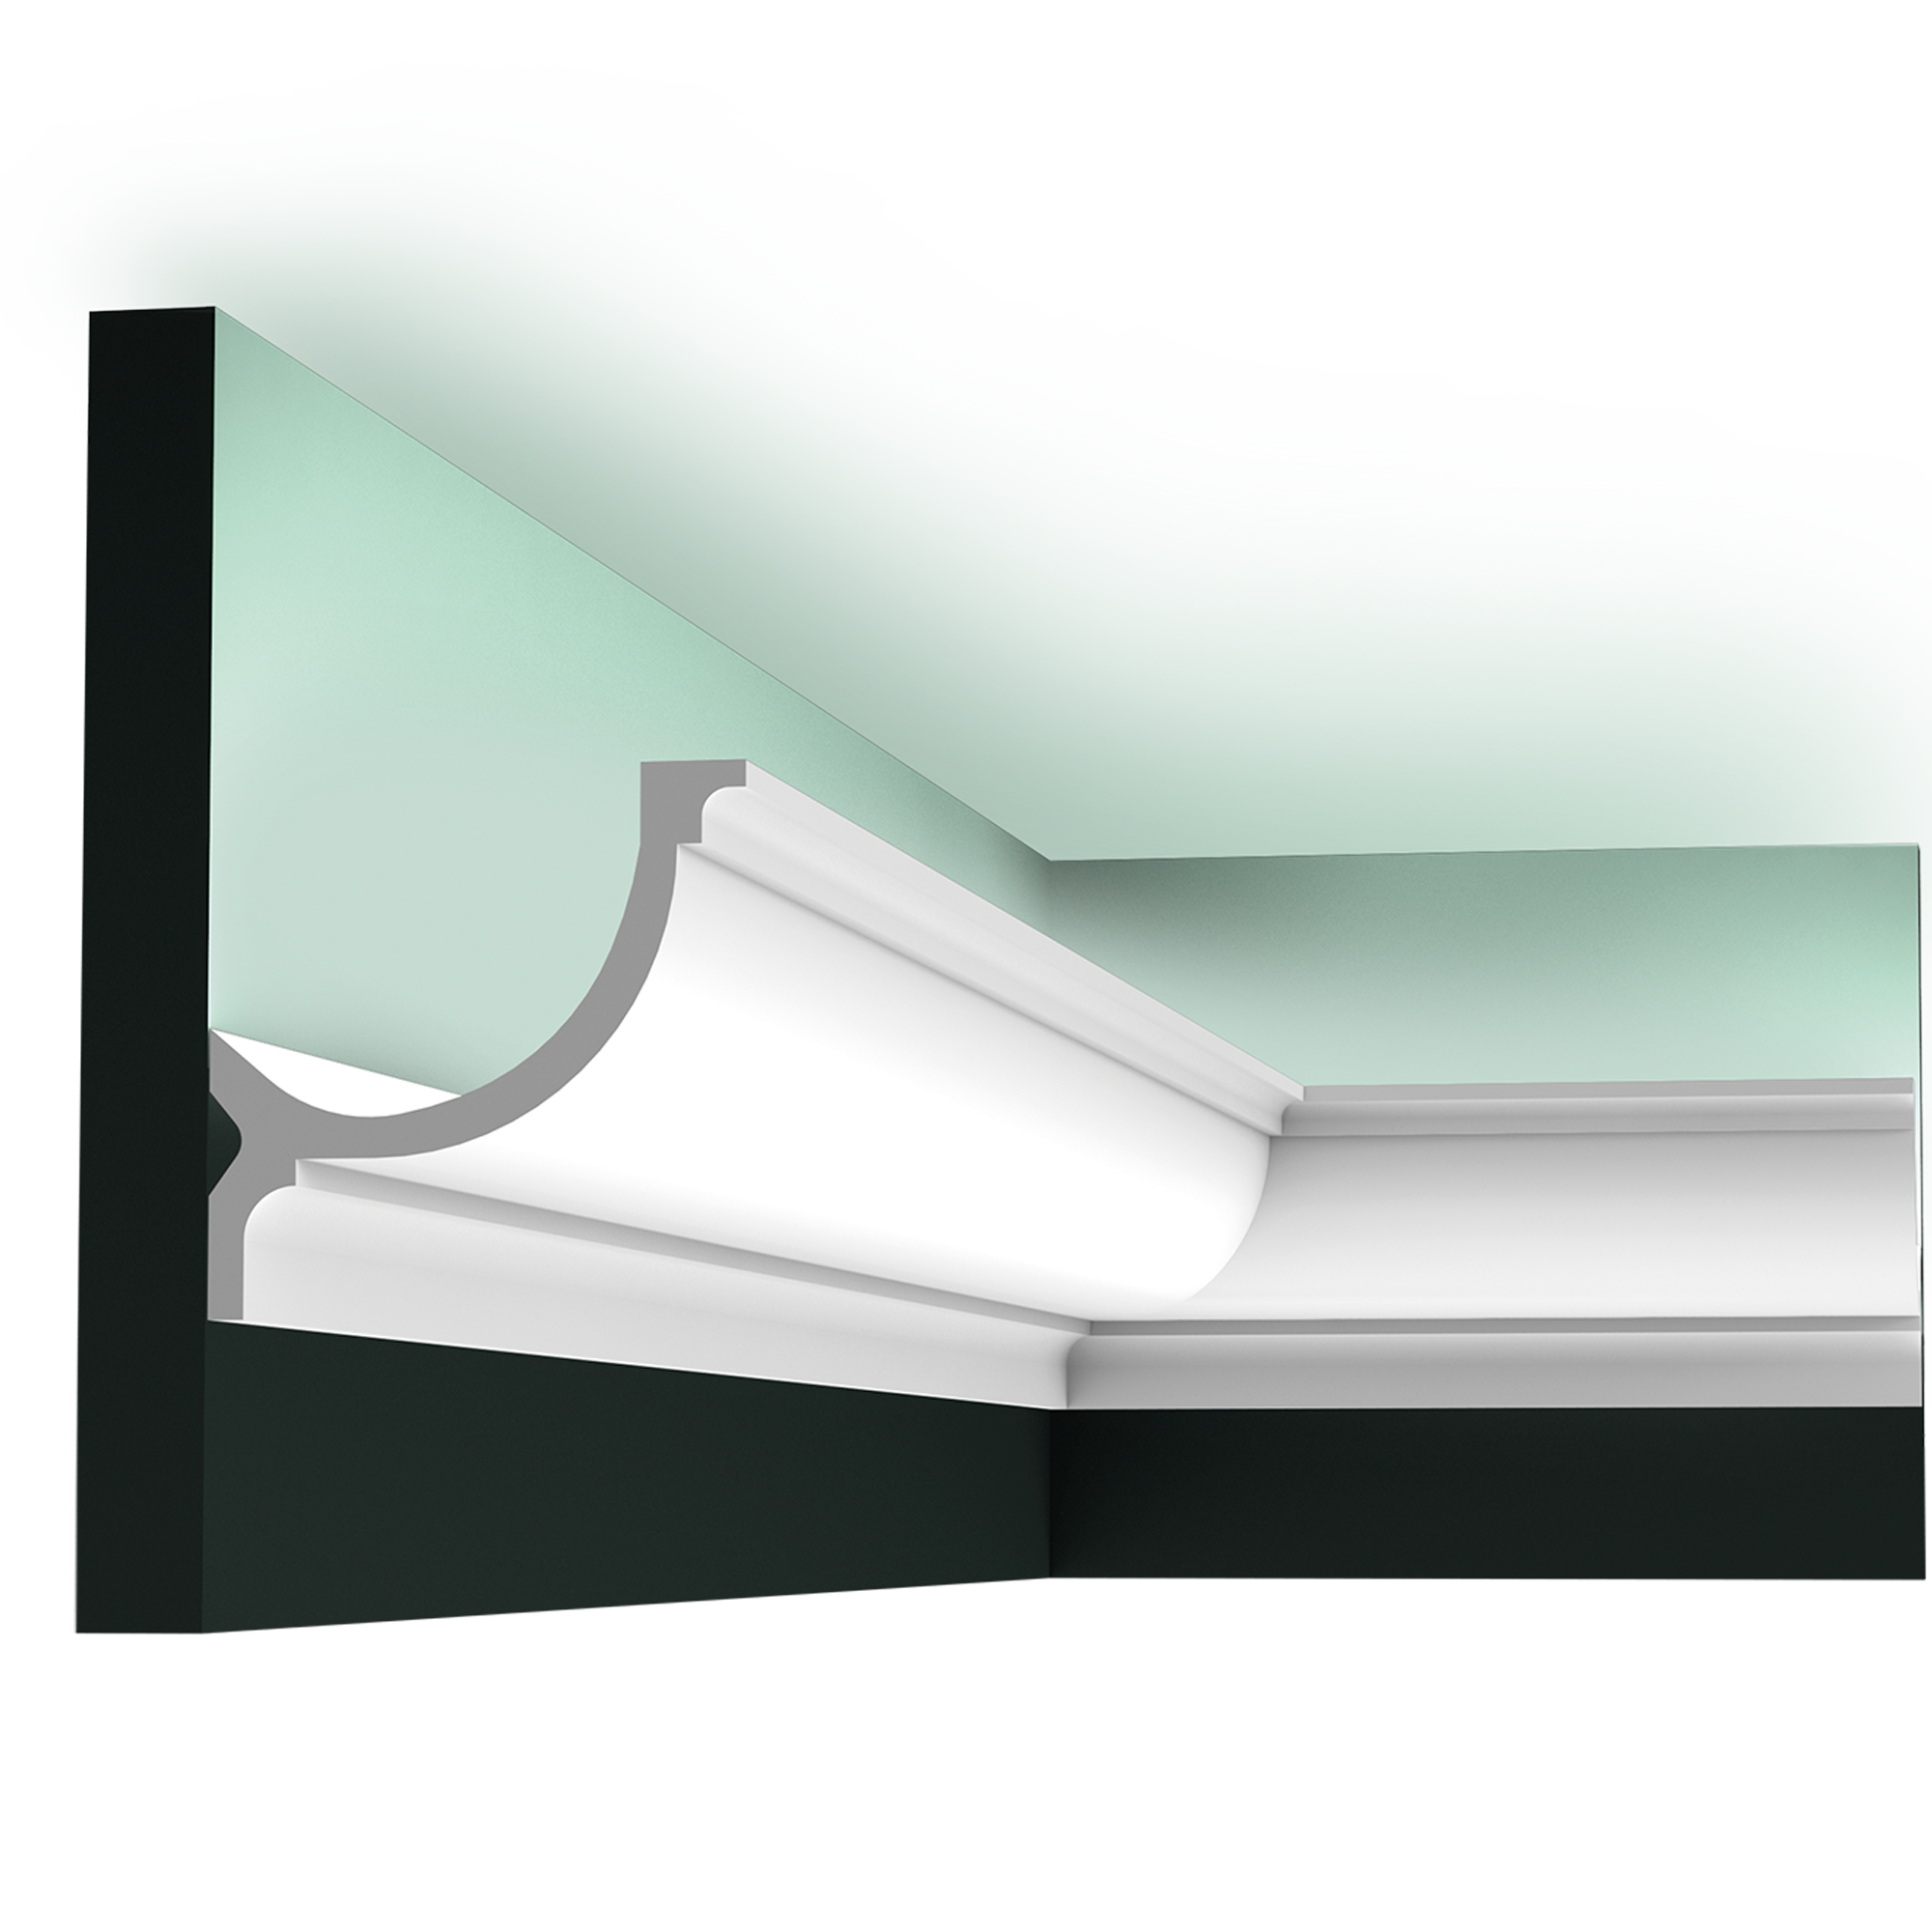 Плинтус для светодиодной ленты на потолок: багет для натяжного потолка с подсветкой, потолочный плинтус с подсветкой своими руками, как сделать светодиодную подсветку по периметру потолка под плинтусом для скрытого освещения